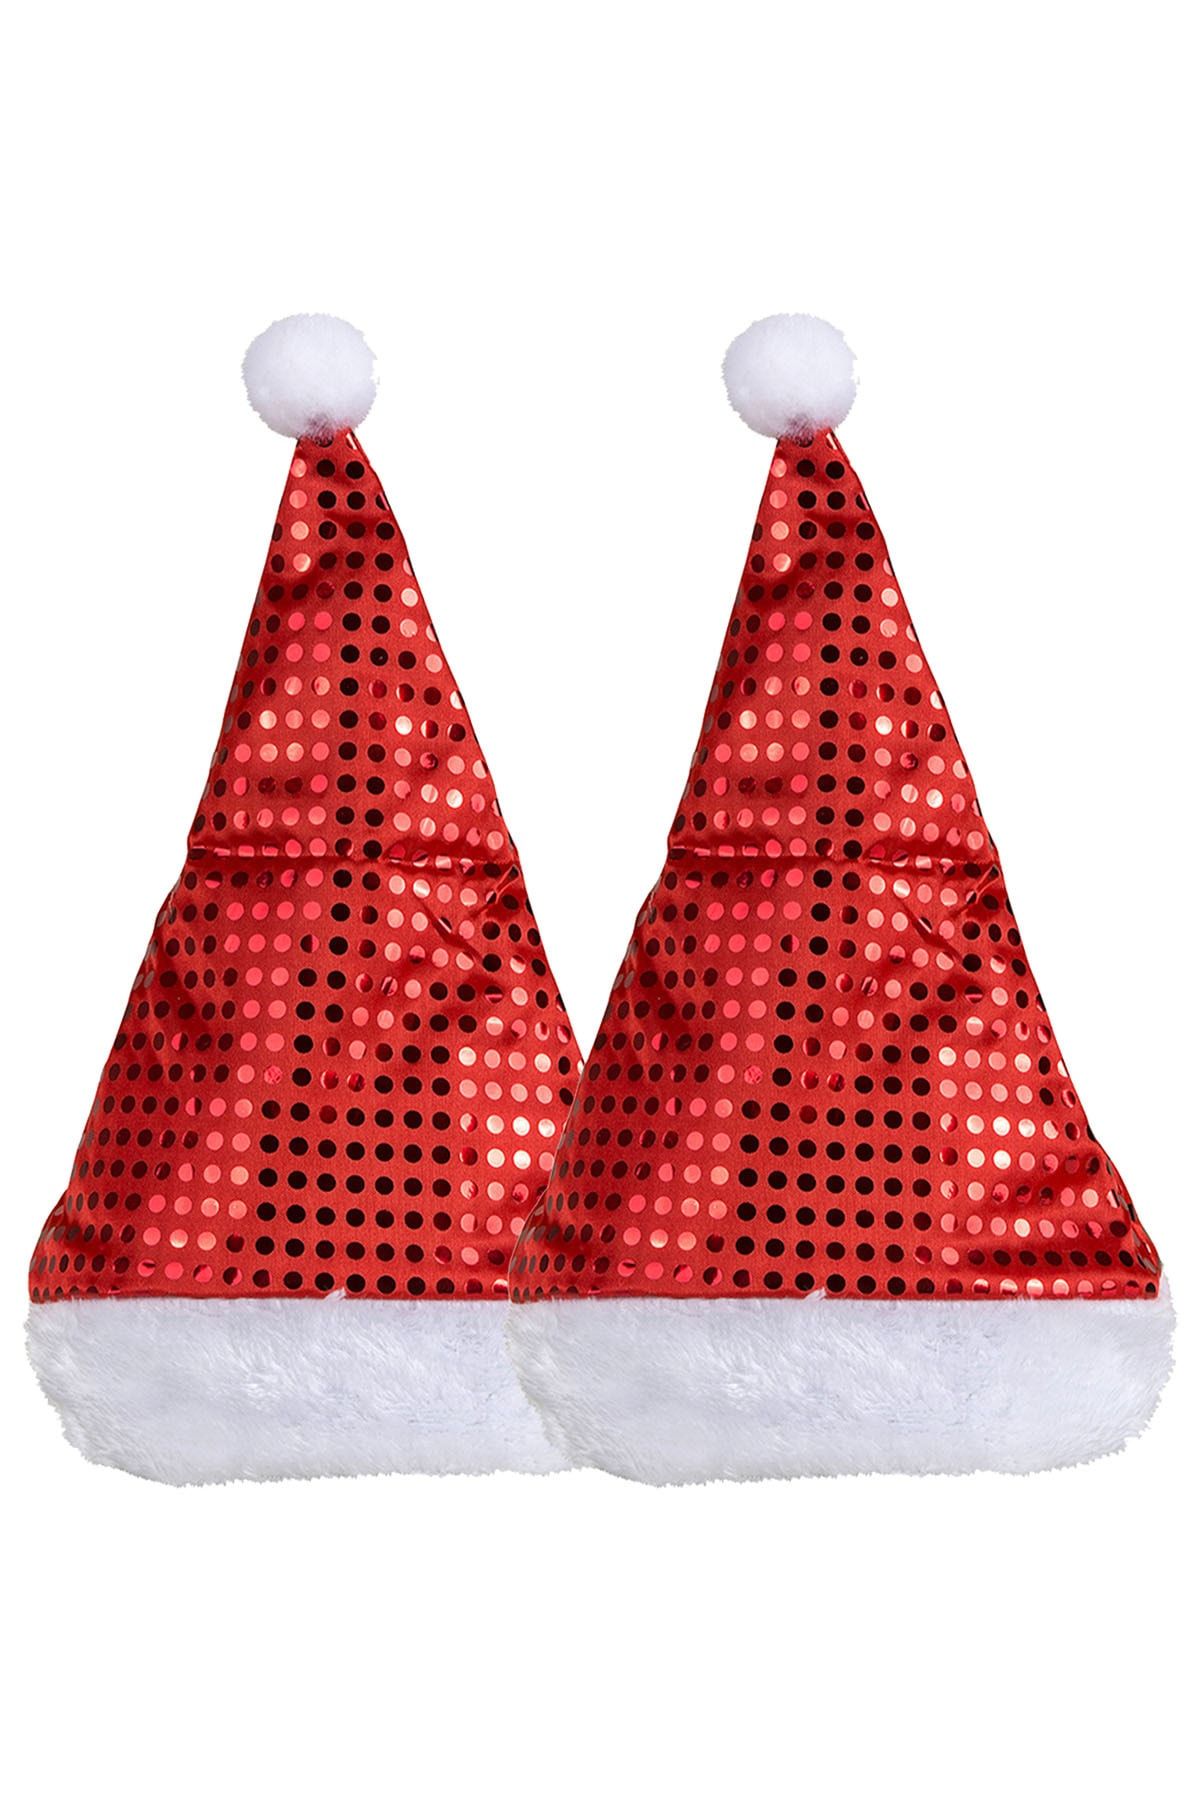 Parti Dolabı 2 Adet Yılbaşı Noel Baba Şapka Noel Anne Pullu Payet Parlak Kırmızı Noel Şapka 36x31 Cm